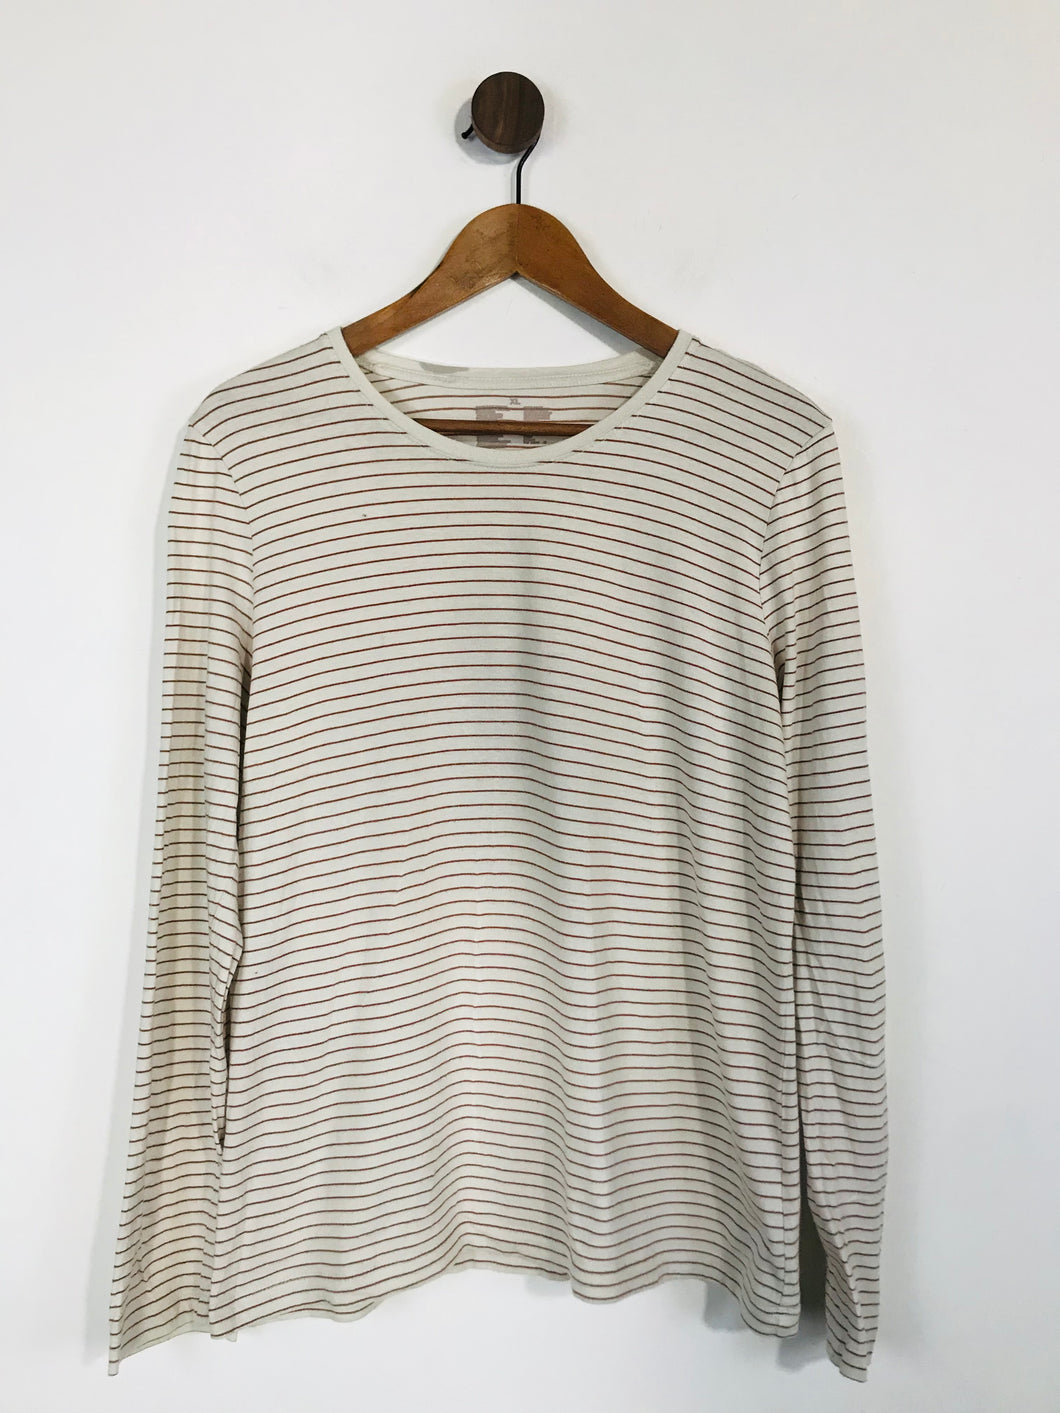 Muji Women's Striped Long Sleeve T-Shirt  | XL UK16 | White